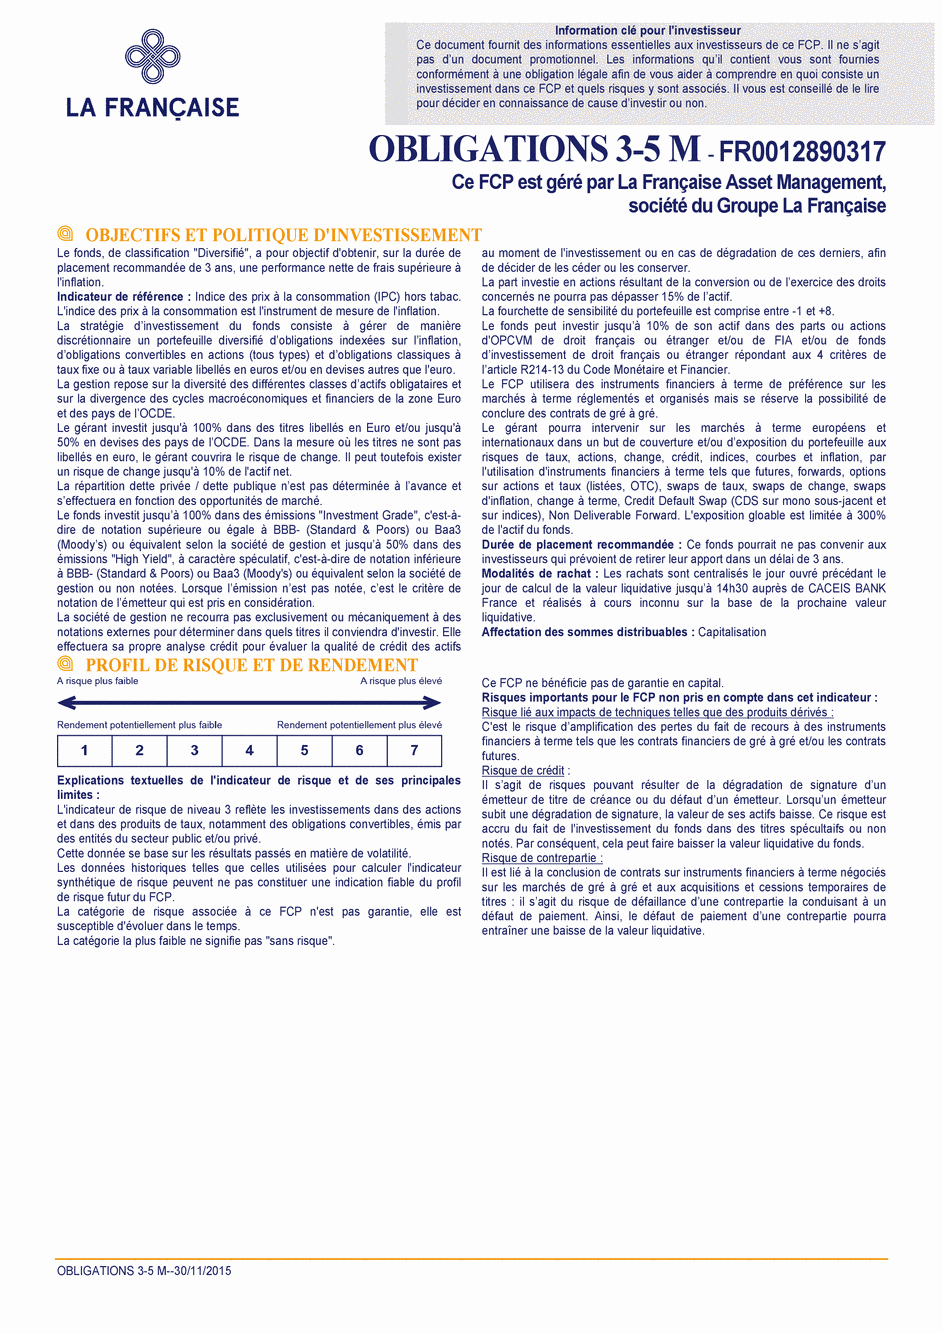 DICI OBLIGATIONS 3-5 M - 30/11/2015 - Français